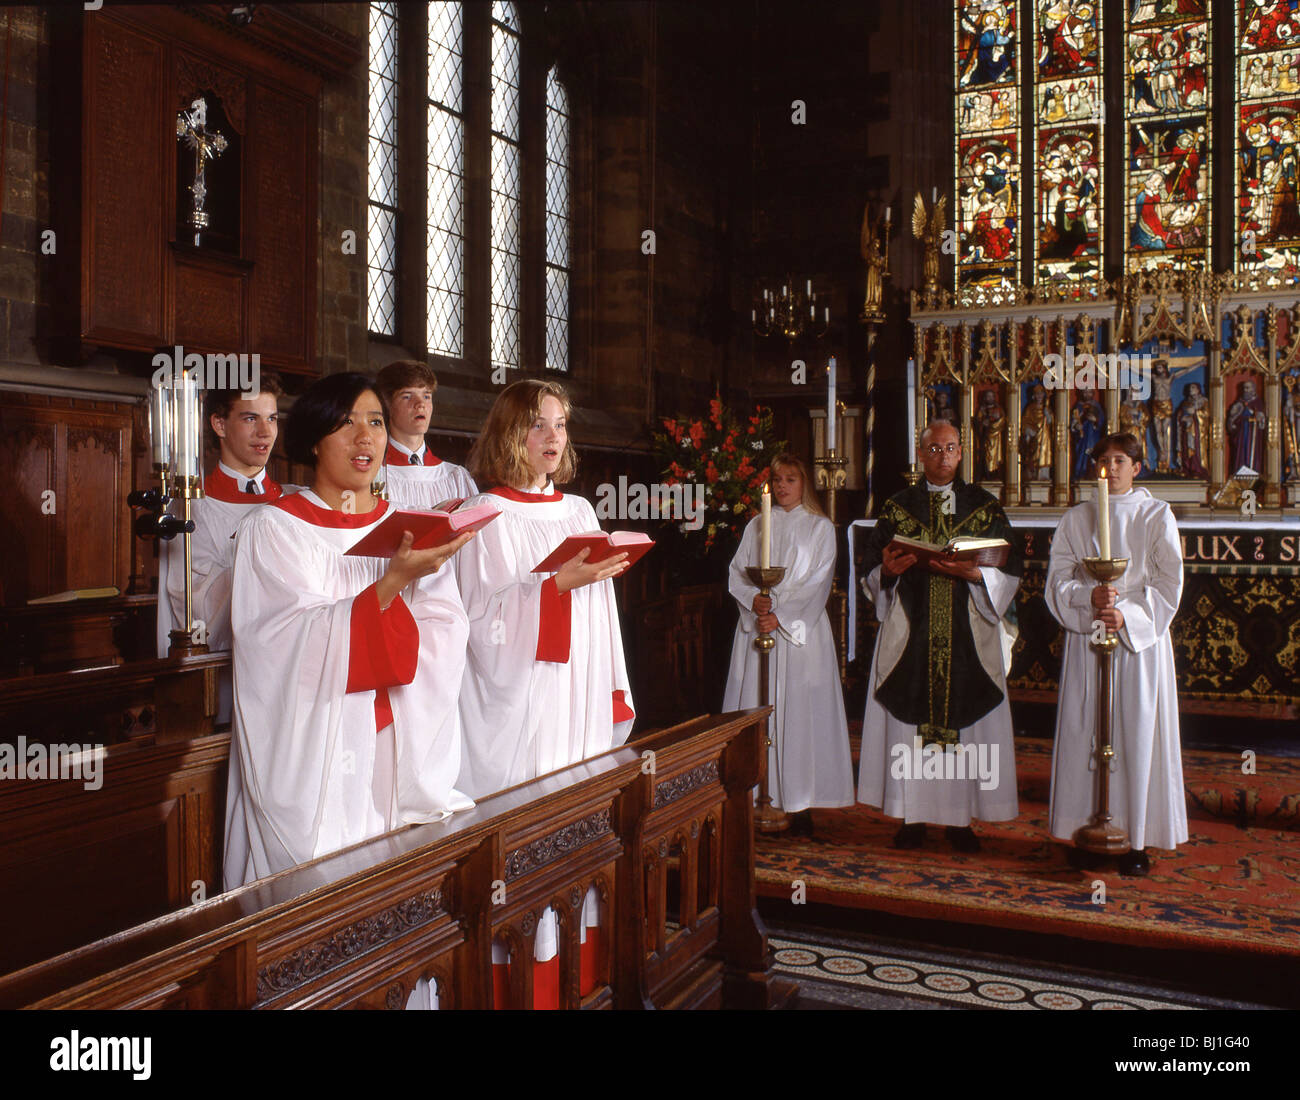 Church choir, Guildford, Surrey, England, United Kingdom Stock Photo